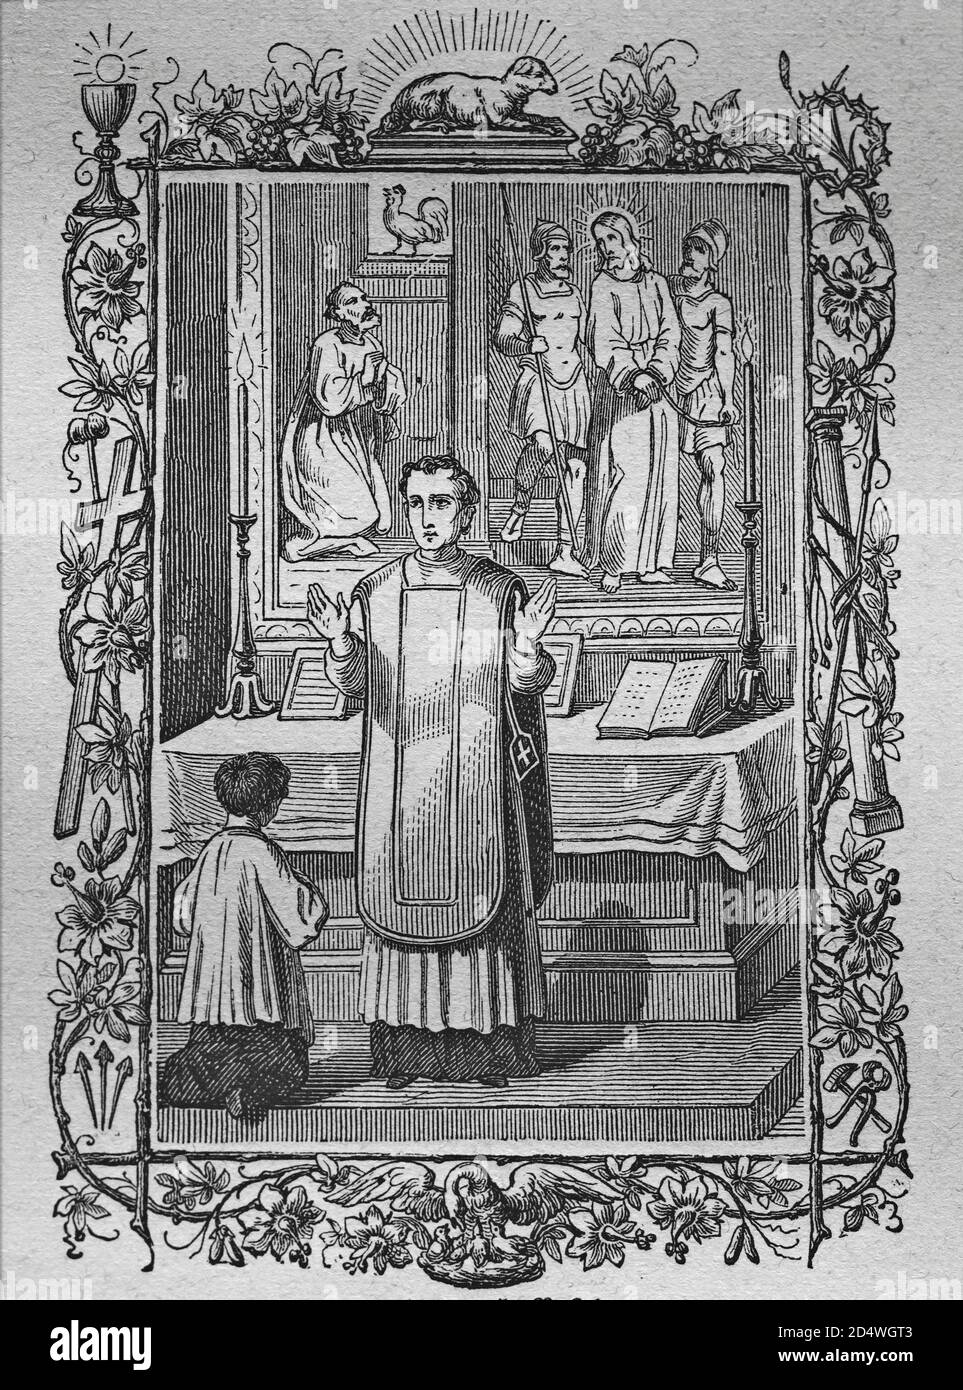 Les collectes, gravure historique en acier d'une bible 1860 Banque D'Images